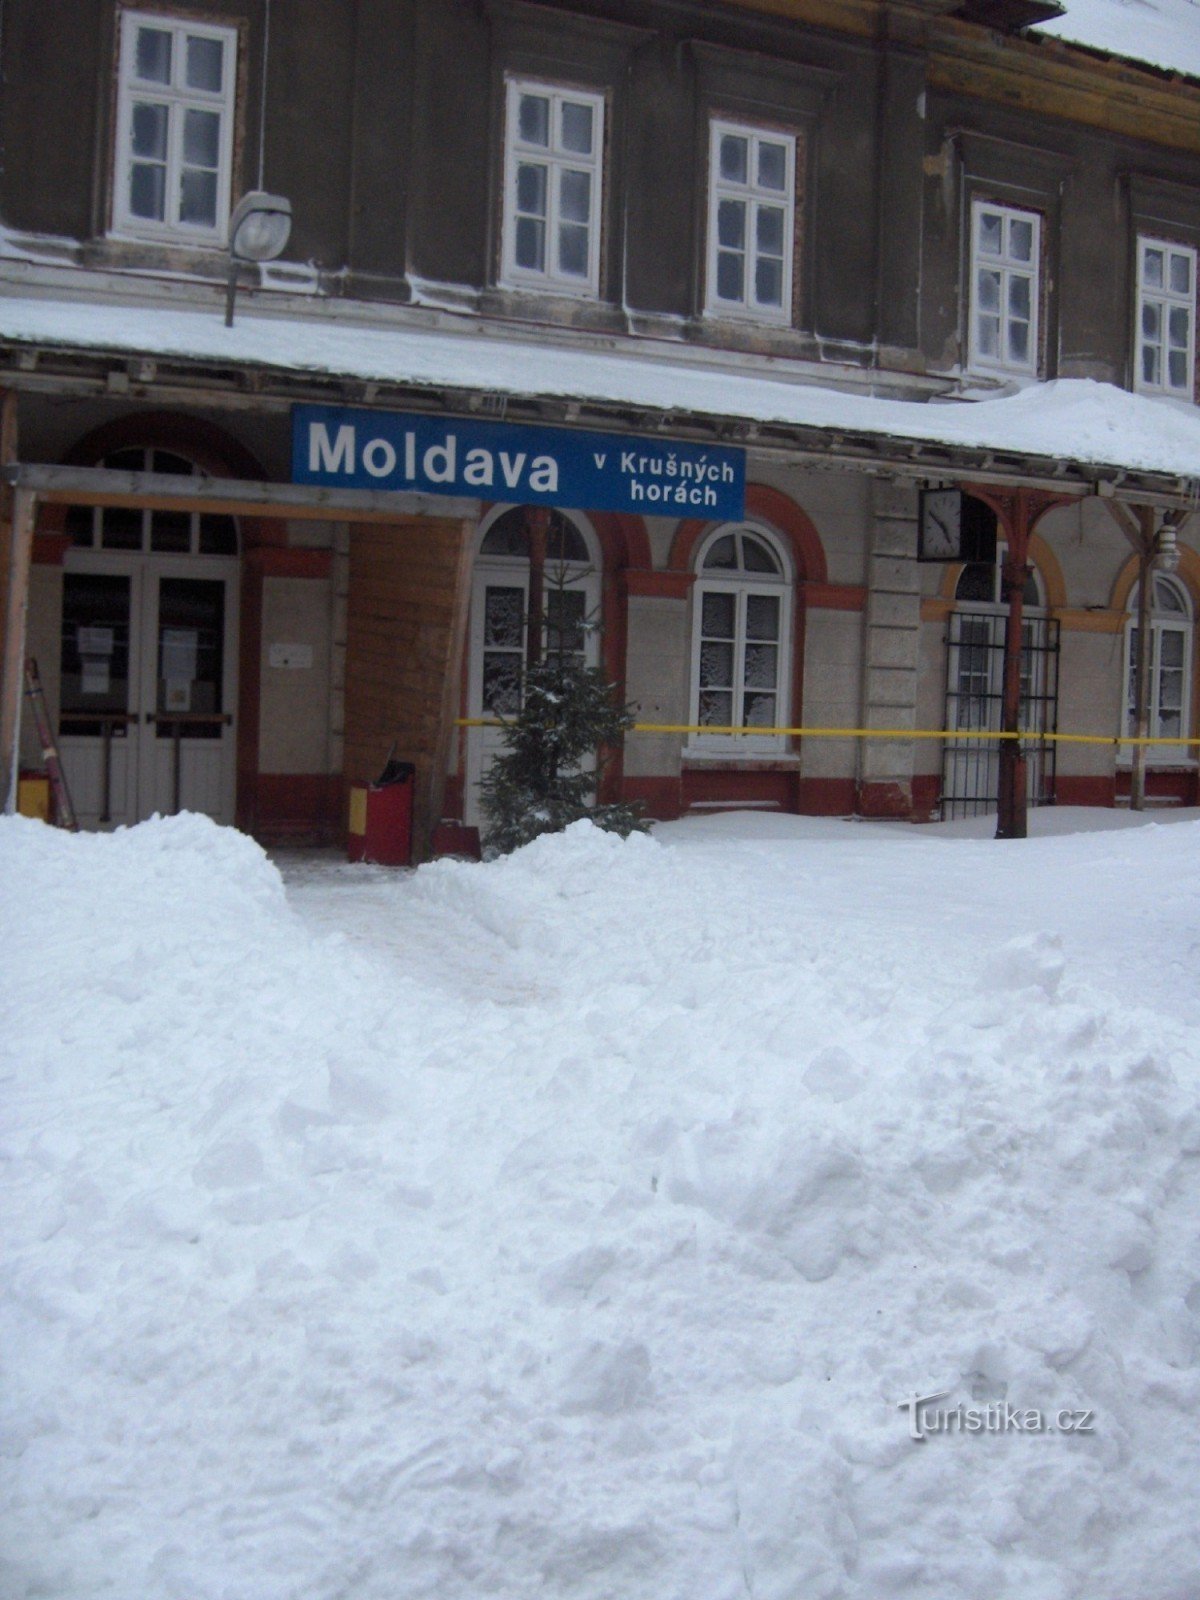 Moldava banegård